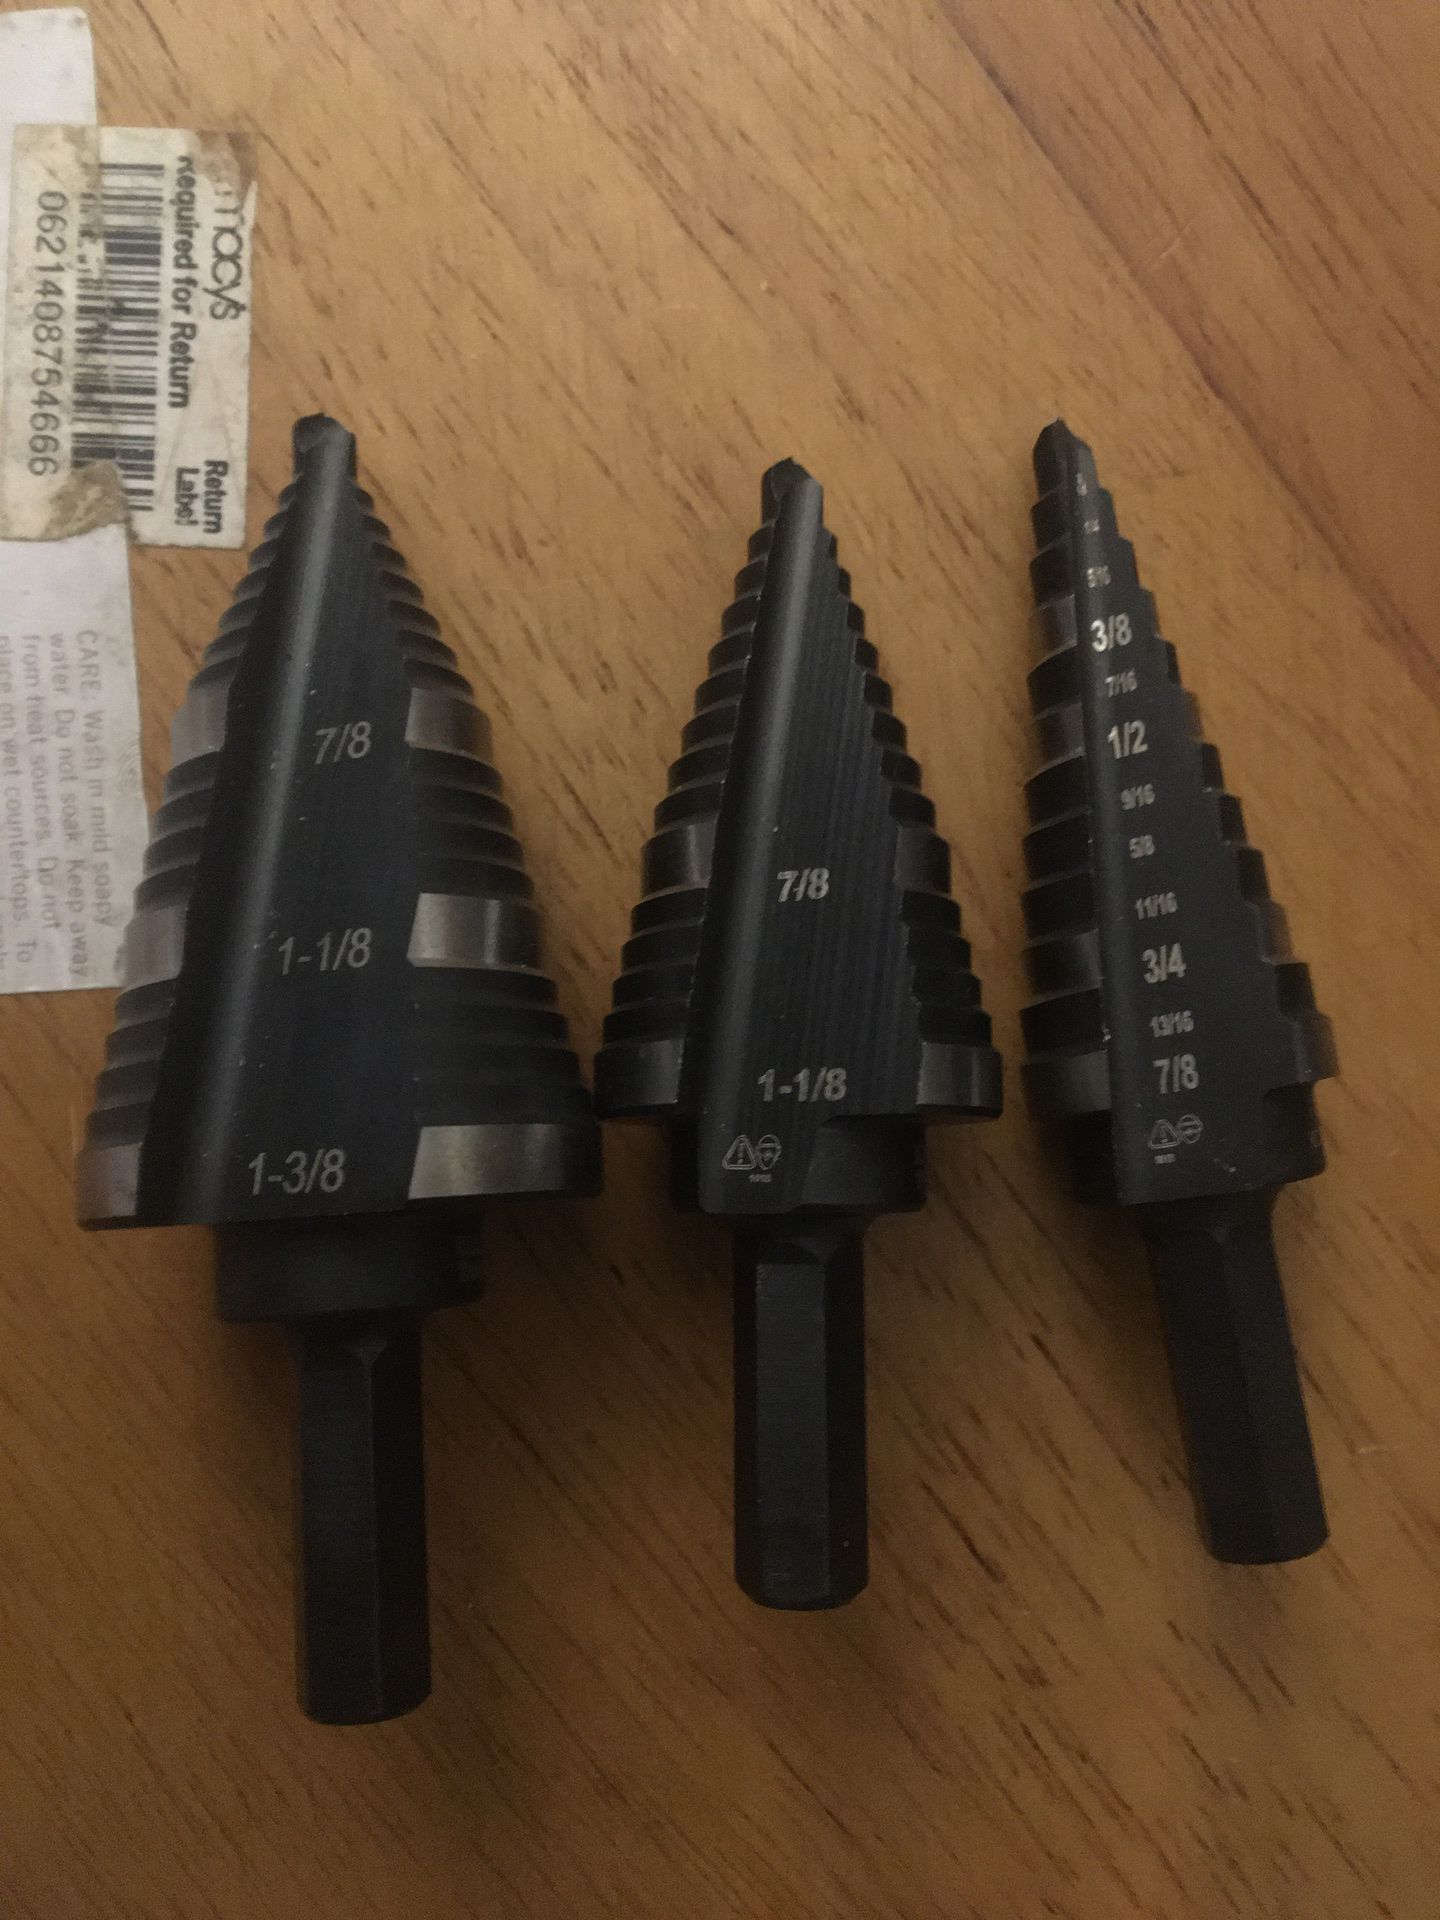 New Klein tools